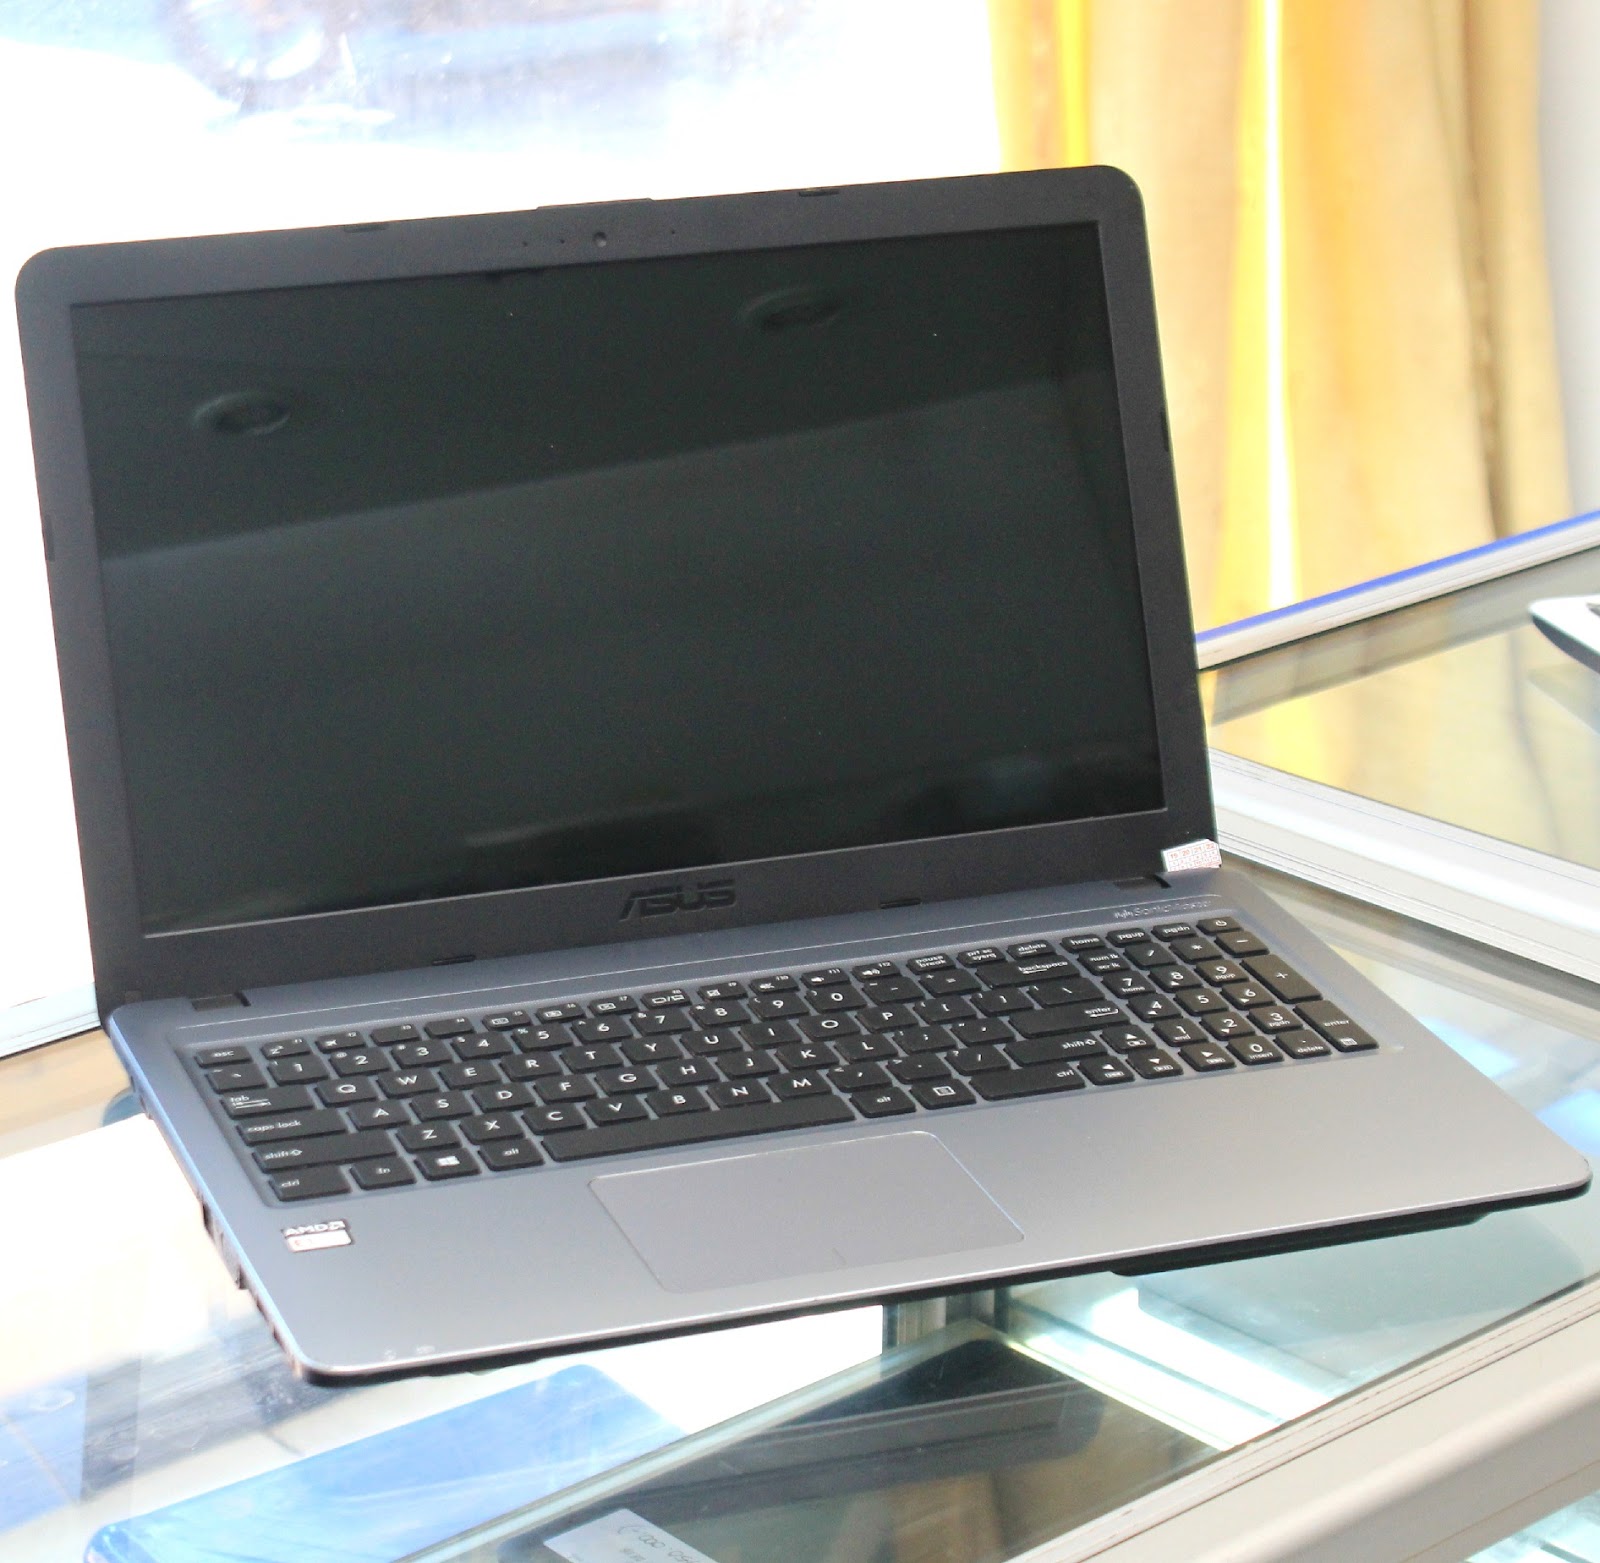  Jual  Laptop ASUS X540Y 15 6 Inchi di Malang  Jual  